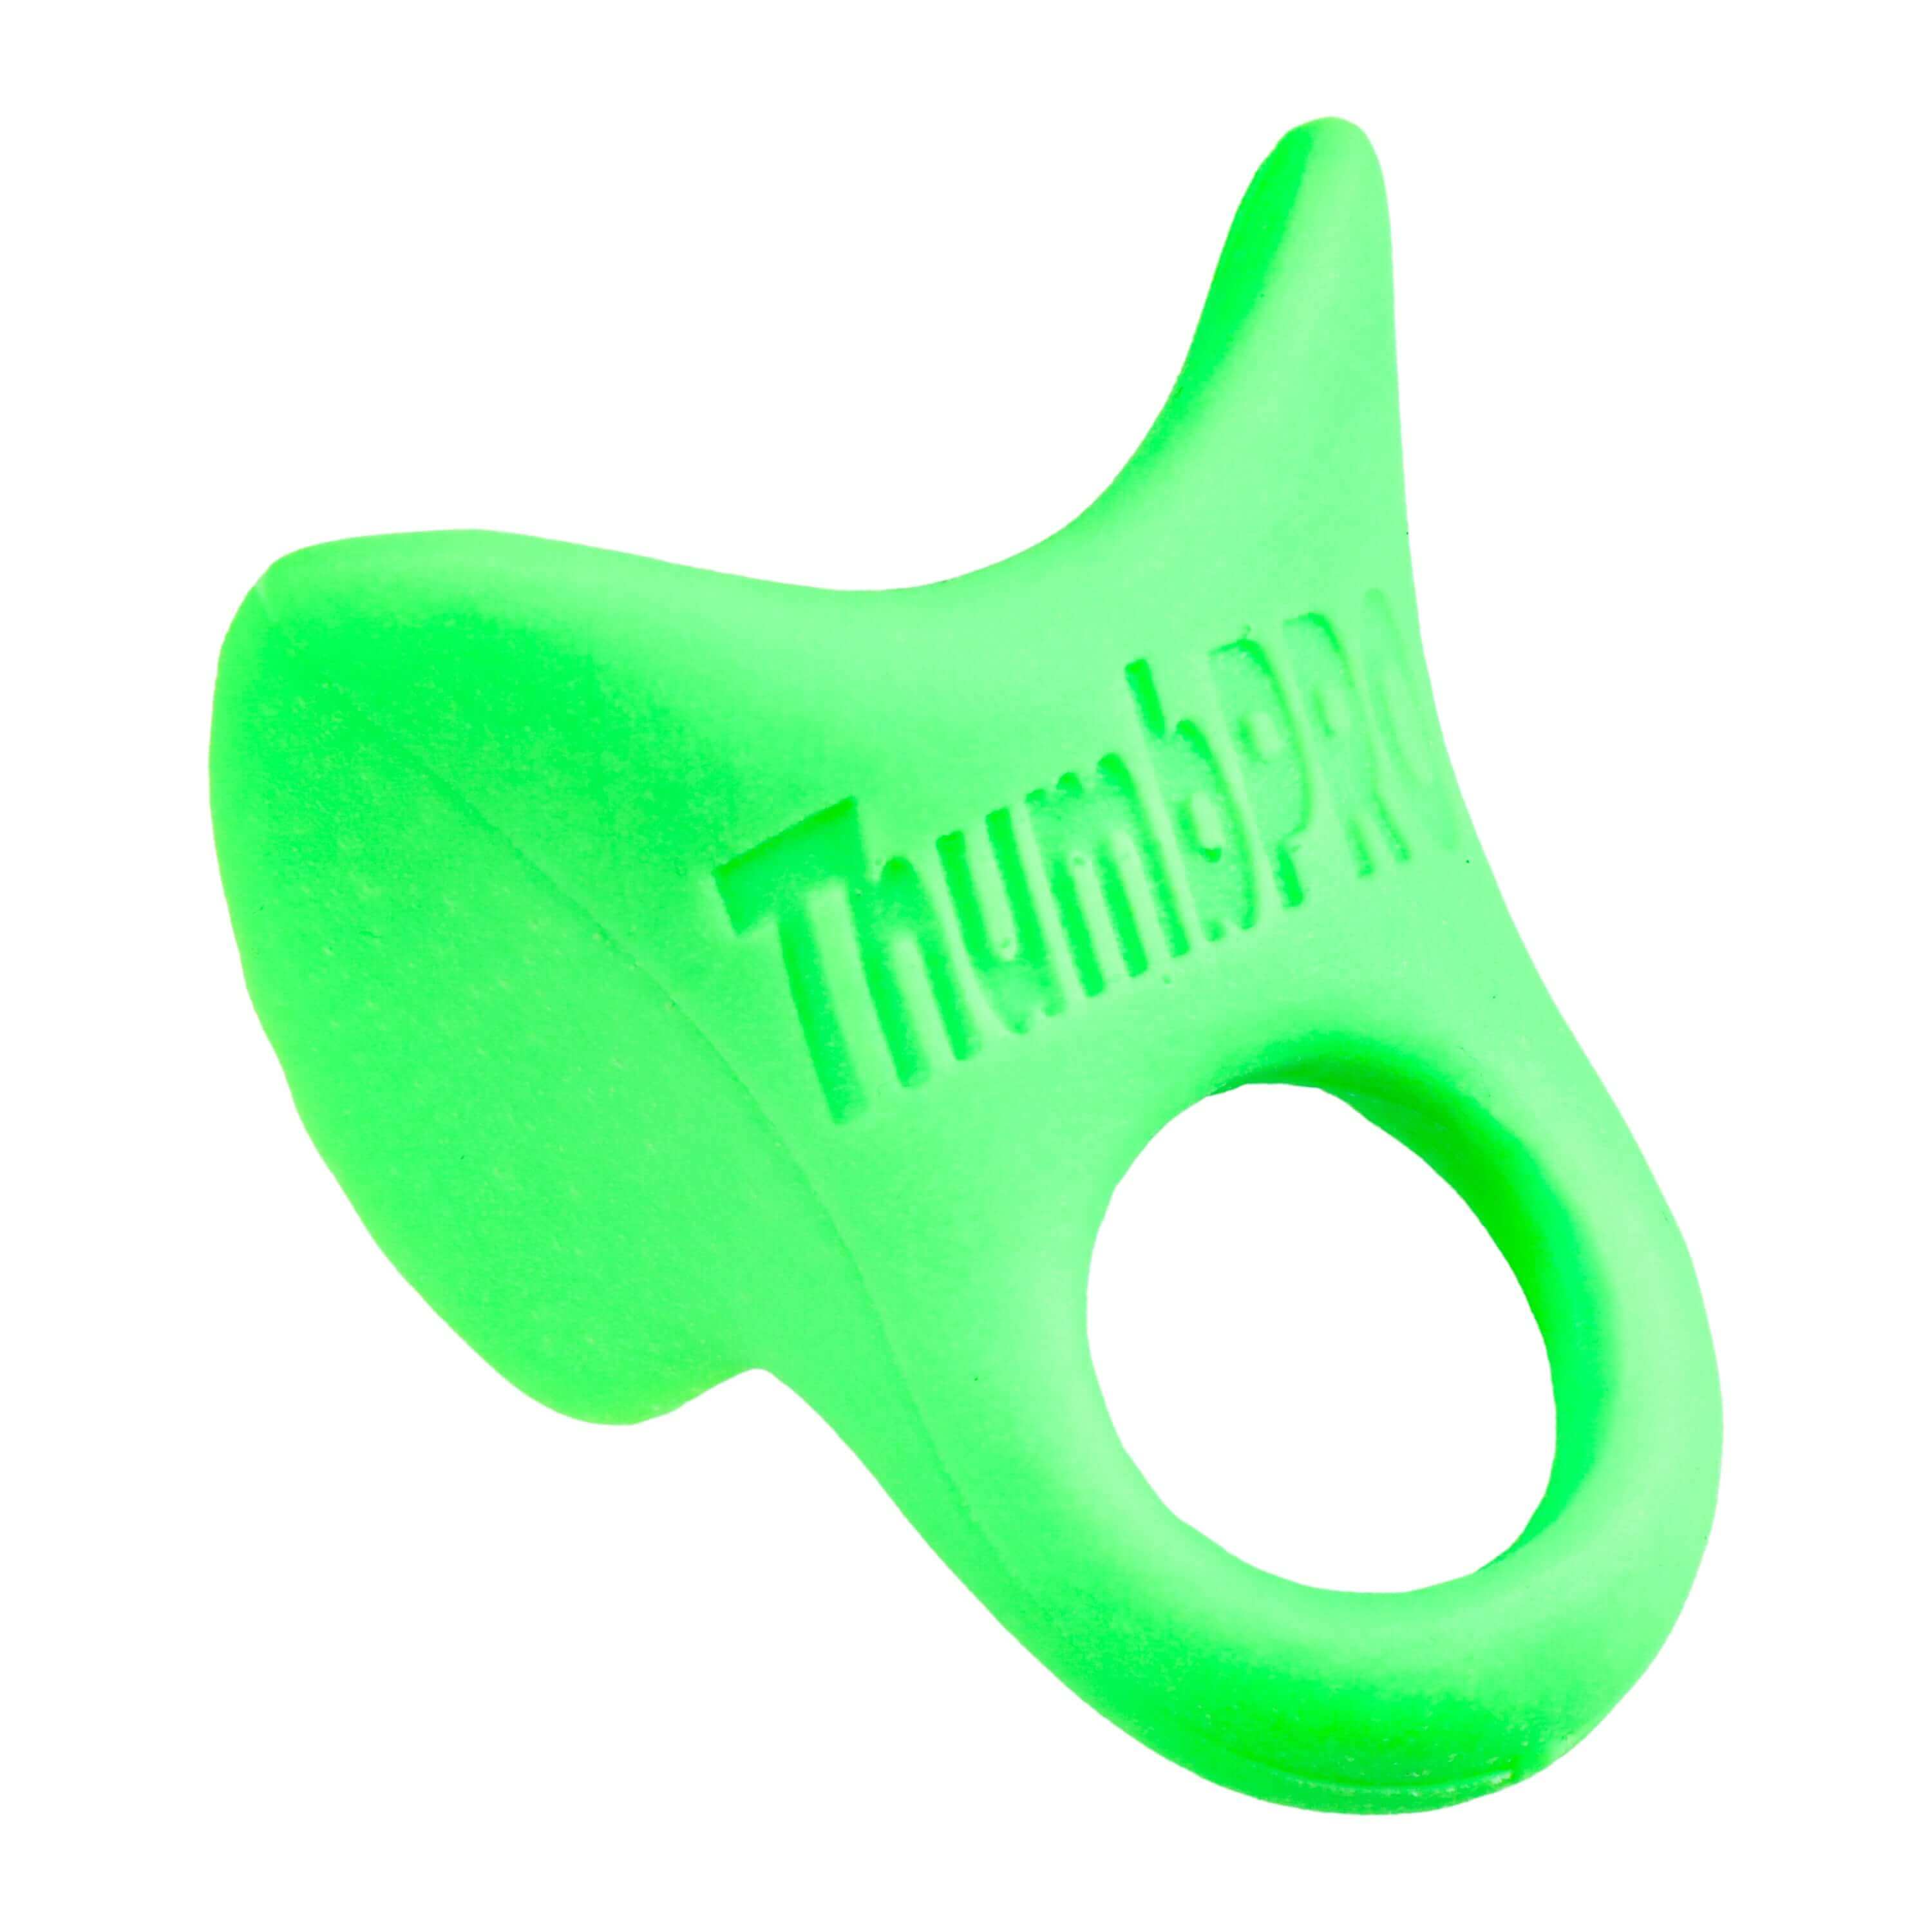 ThumbPRO Performance Baseball and Softball Thumb Guard, Line Drive Lime